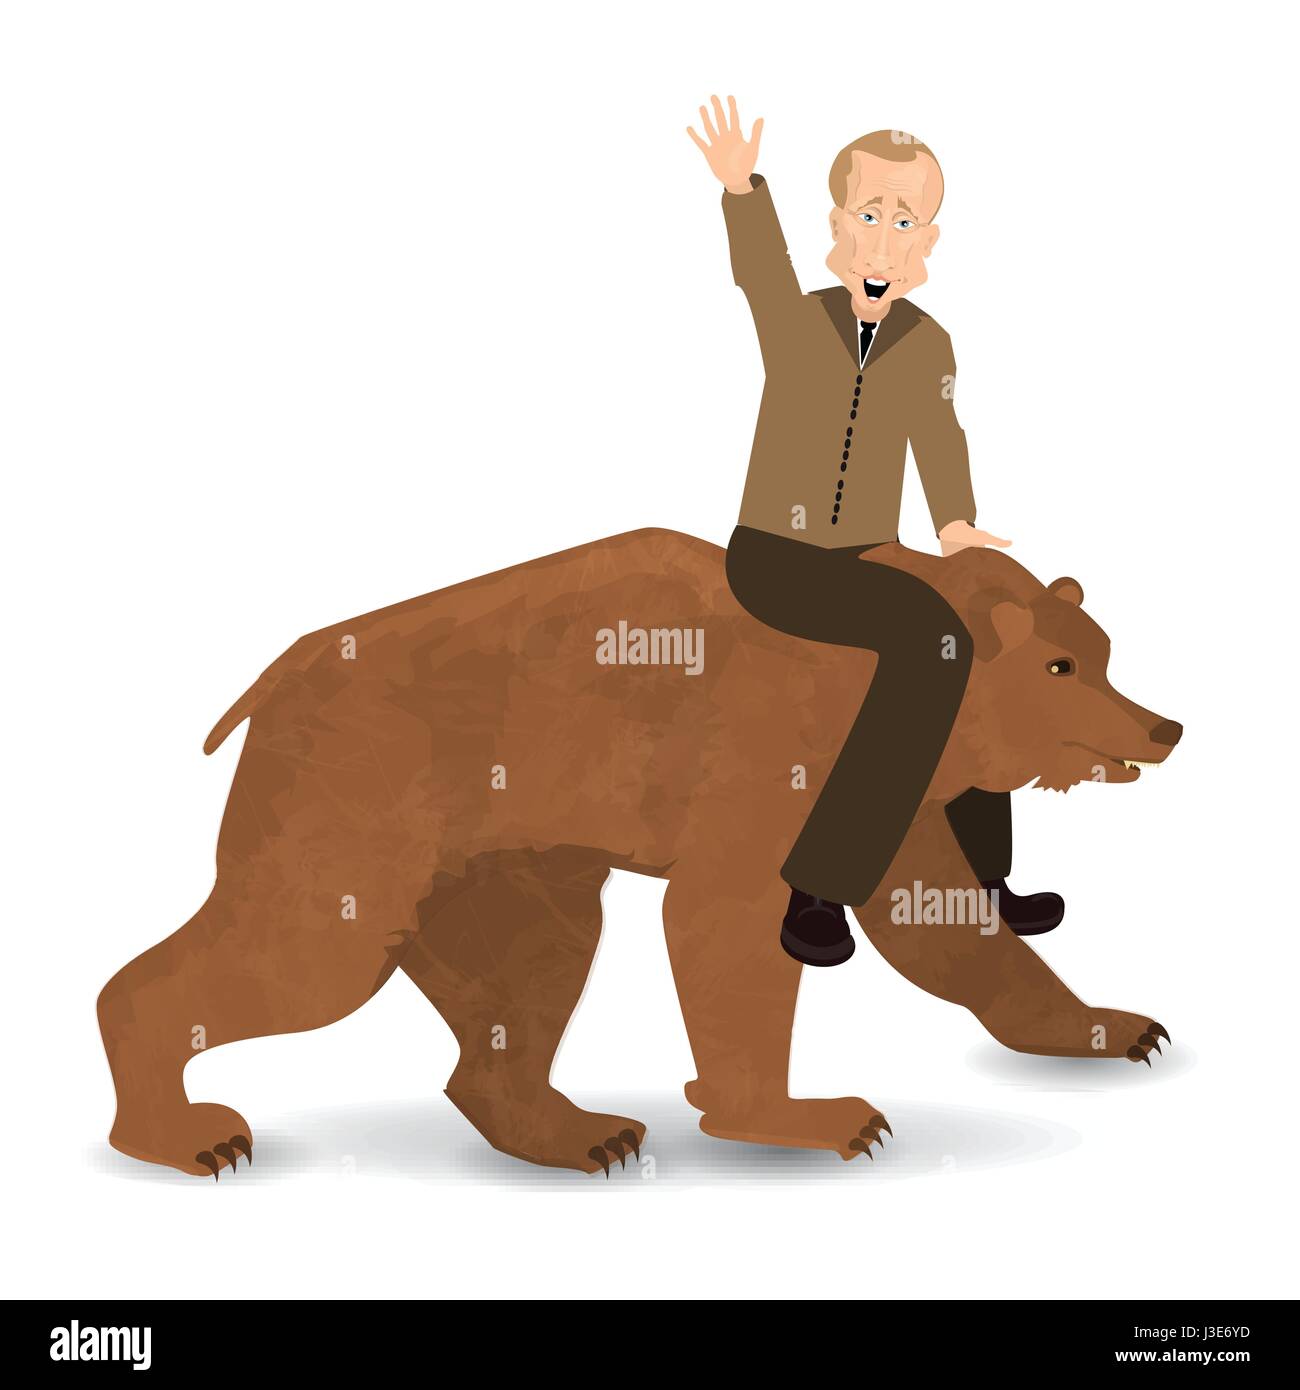 Vladimir Putin reitet einen Bären wilde braun. Gesattelt. Illustration für Ihr Design. Bär zu Fuß auf weißem Hintergrund. Präsidenten der Russischen Föderation Stock Vektor